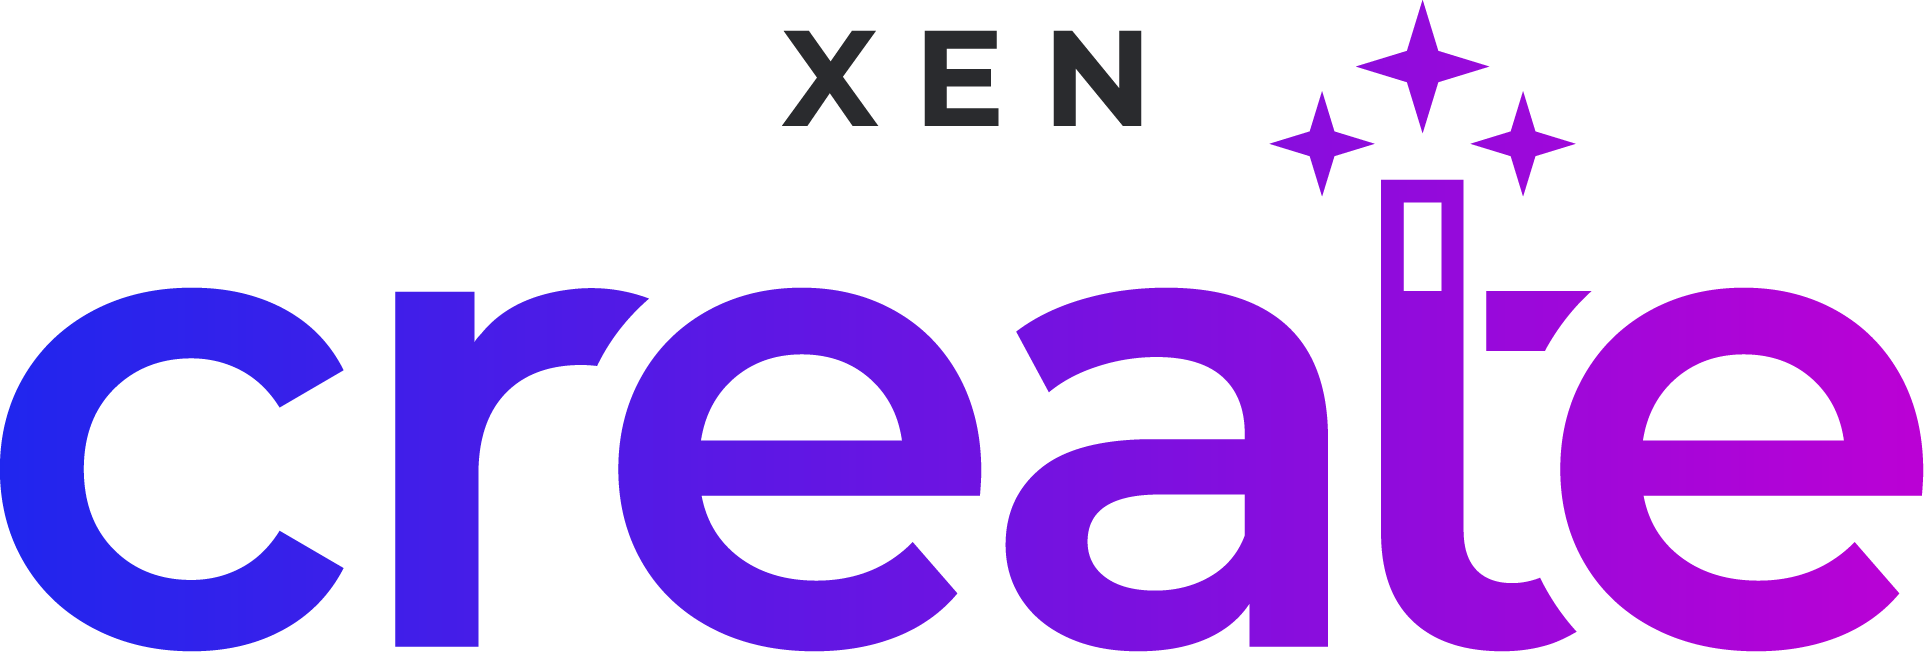 XEN Create